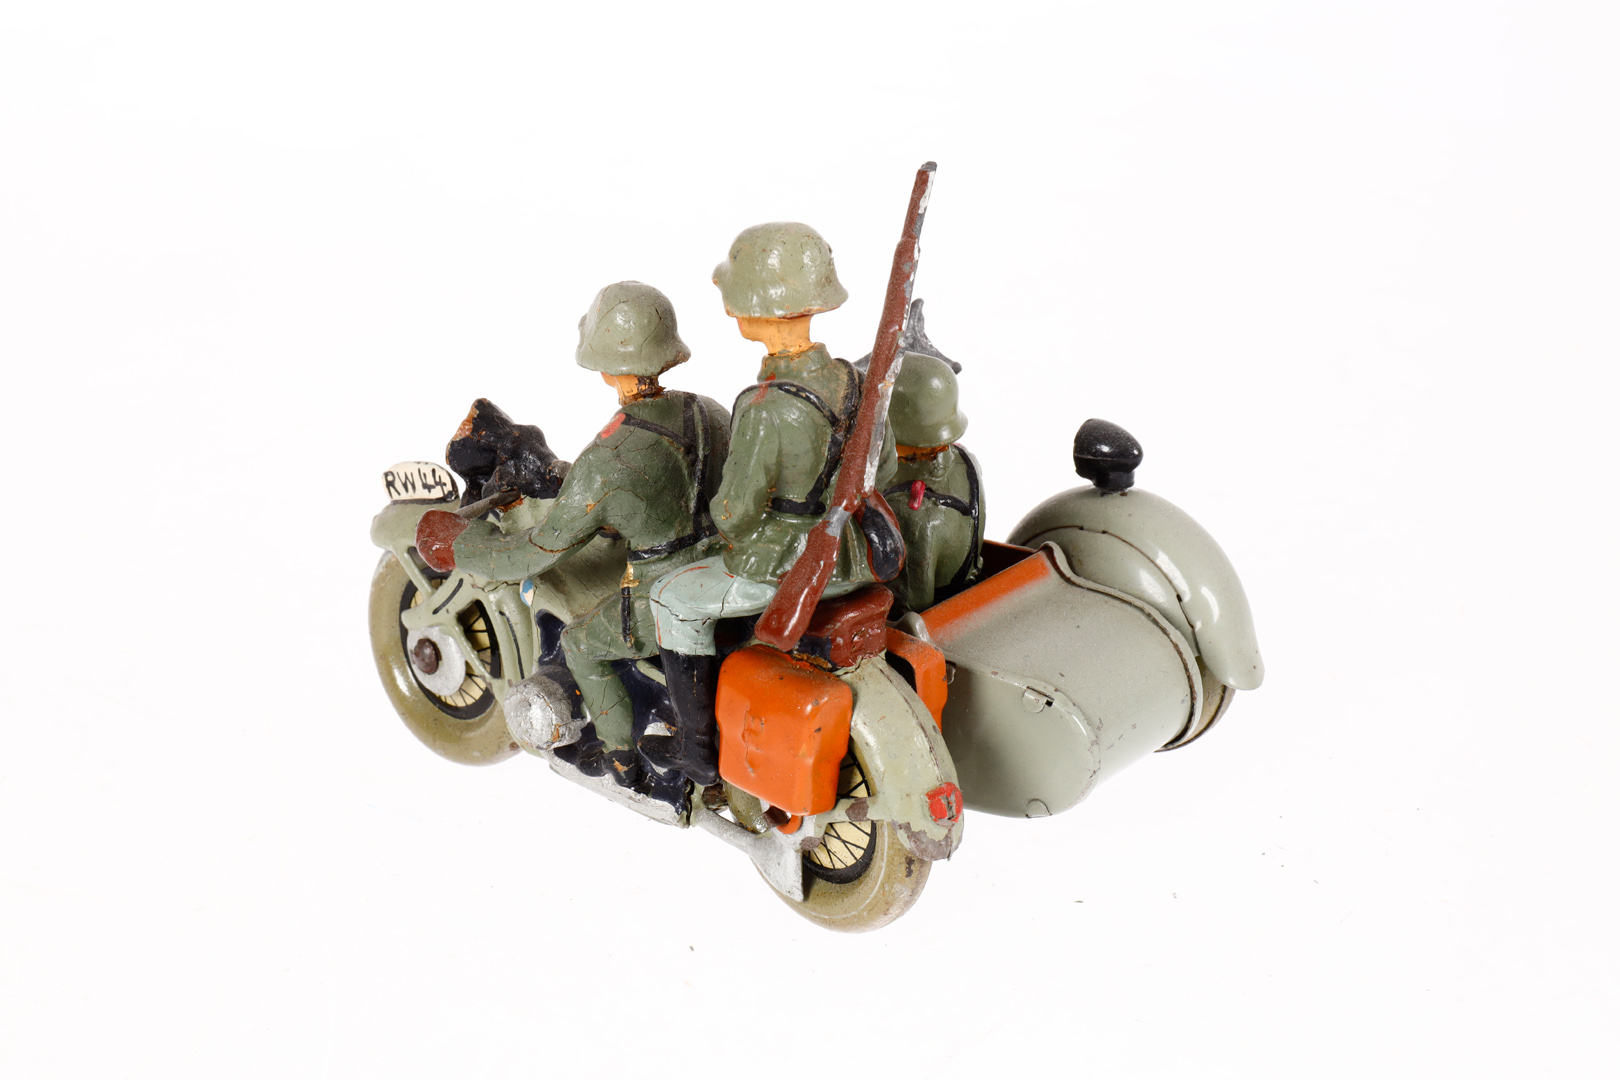 Motorrad mit Beiwagen und 3 Soldaten, Blech/Masse, HL, LS, L 10, Z 3 - Image 2 of 2